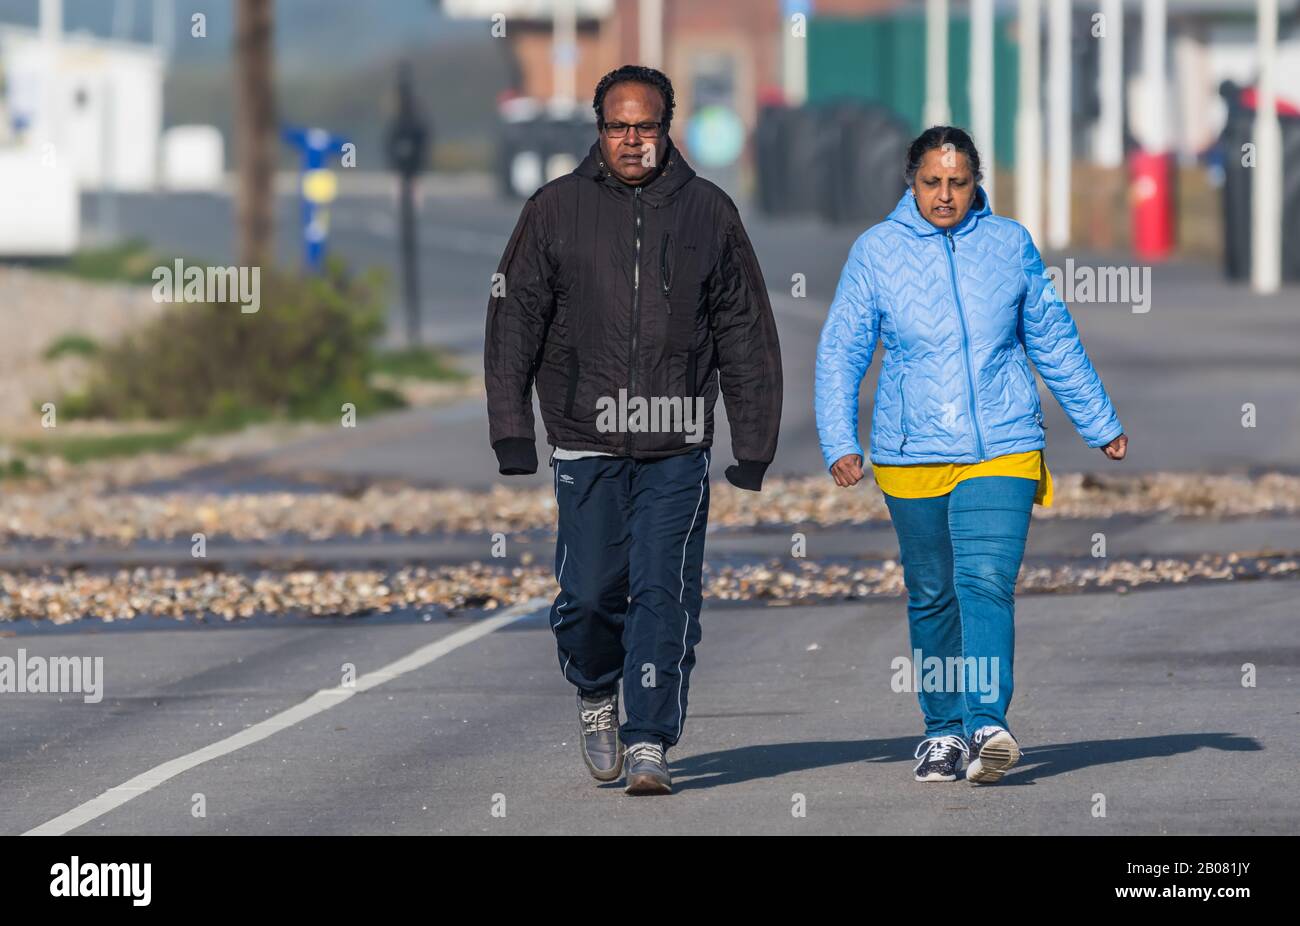 Asiatisches (möglicherweise indisches) Paar Menschen, die an einem kalten Tag auf einer Promenade in England, Großbritannien, zusammen spazieren und Mäntel tragen. Stockfoto